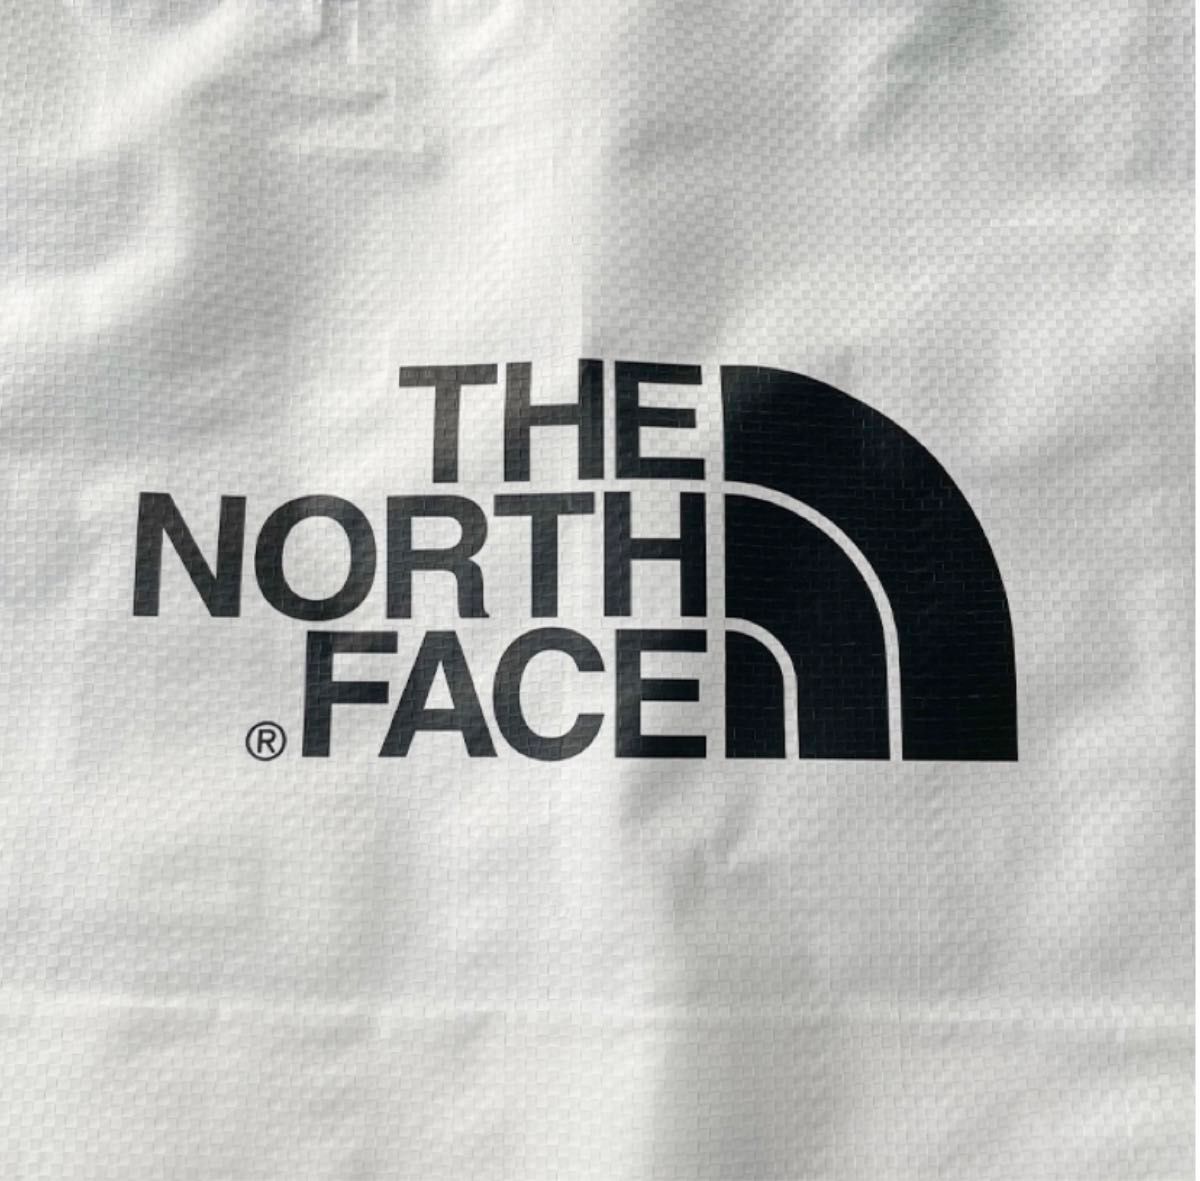 THE NORTH FACE ホワイトレーベル 限定 ショッパーバッグ エコバッグ 1枚 Lサイズ 新品未使用 送料込み